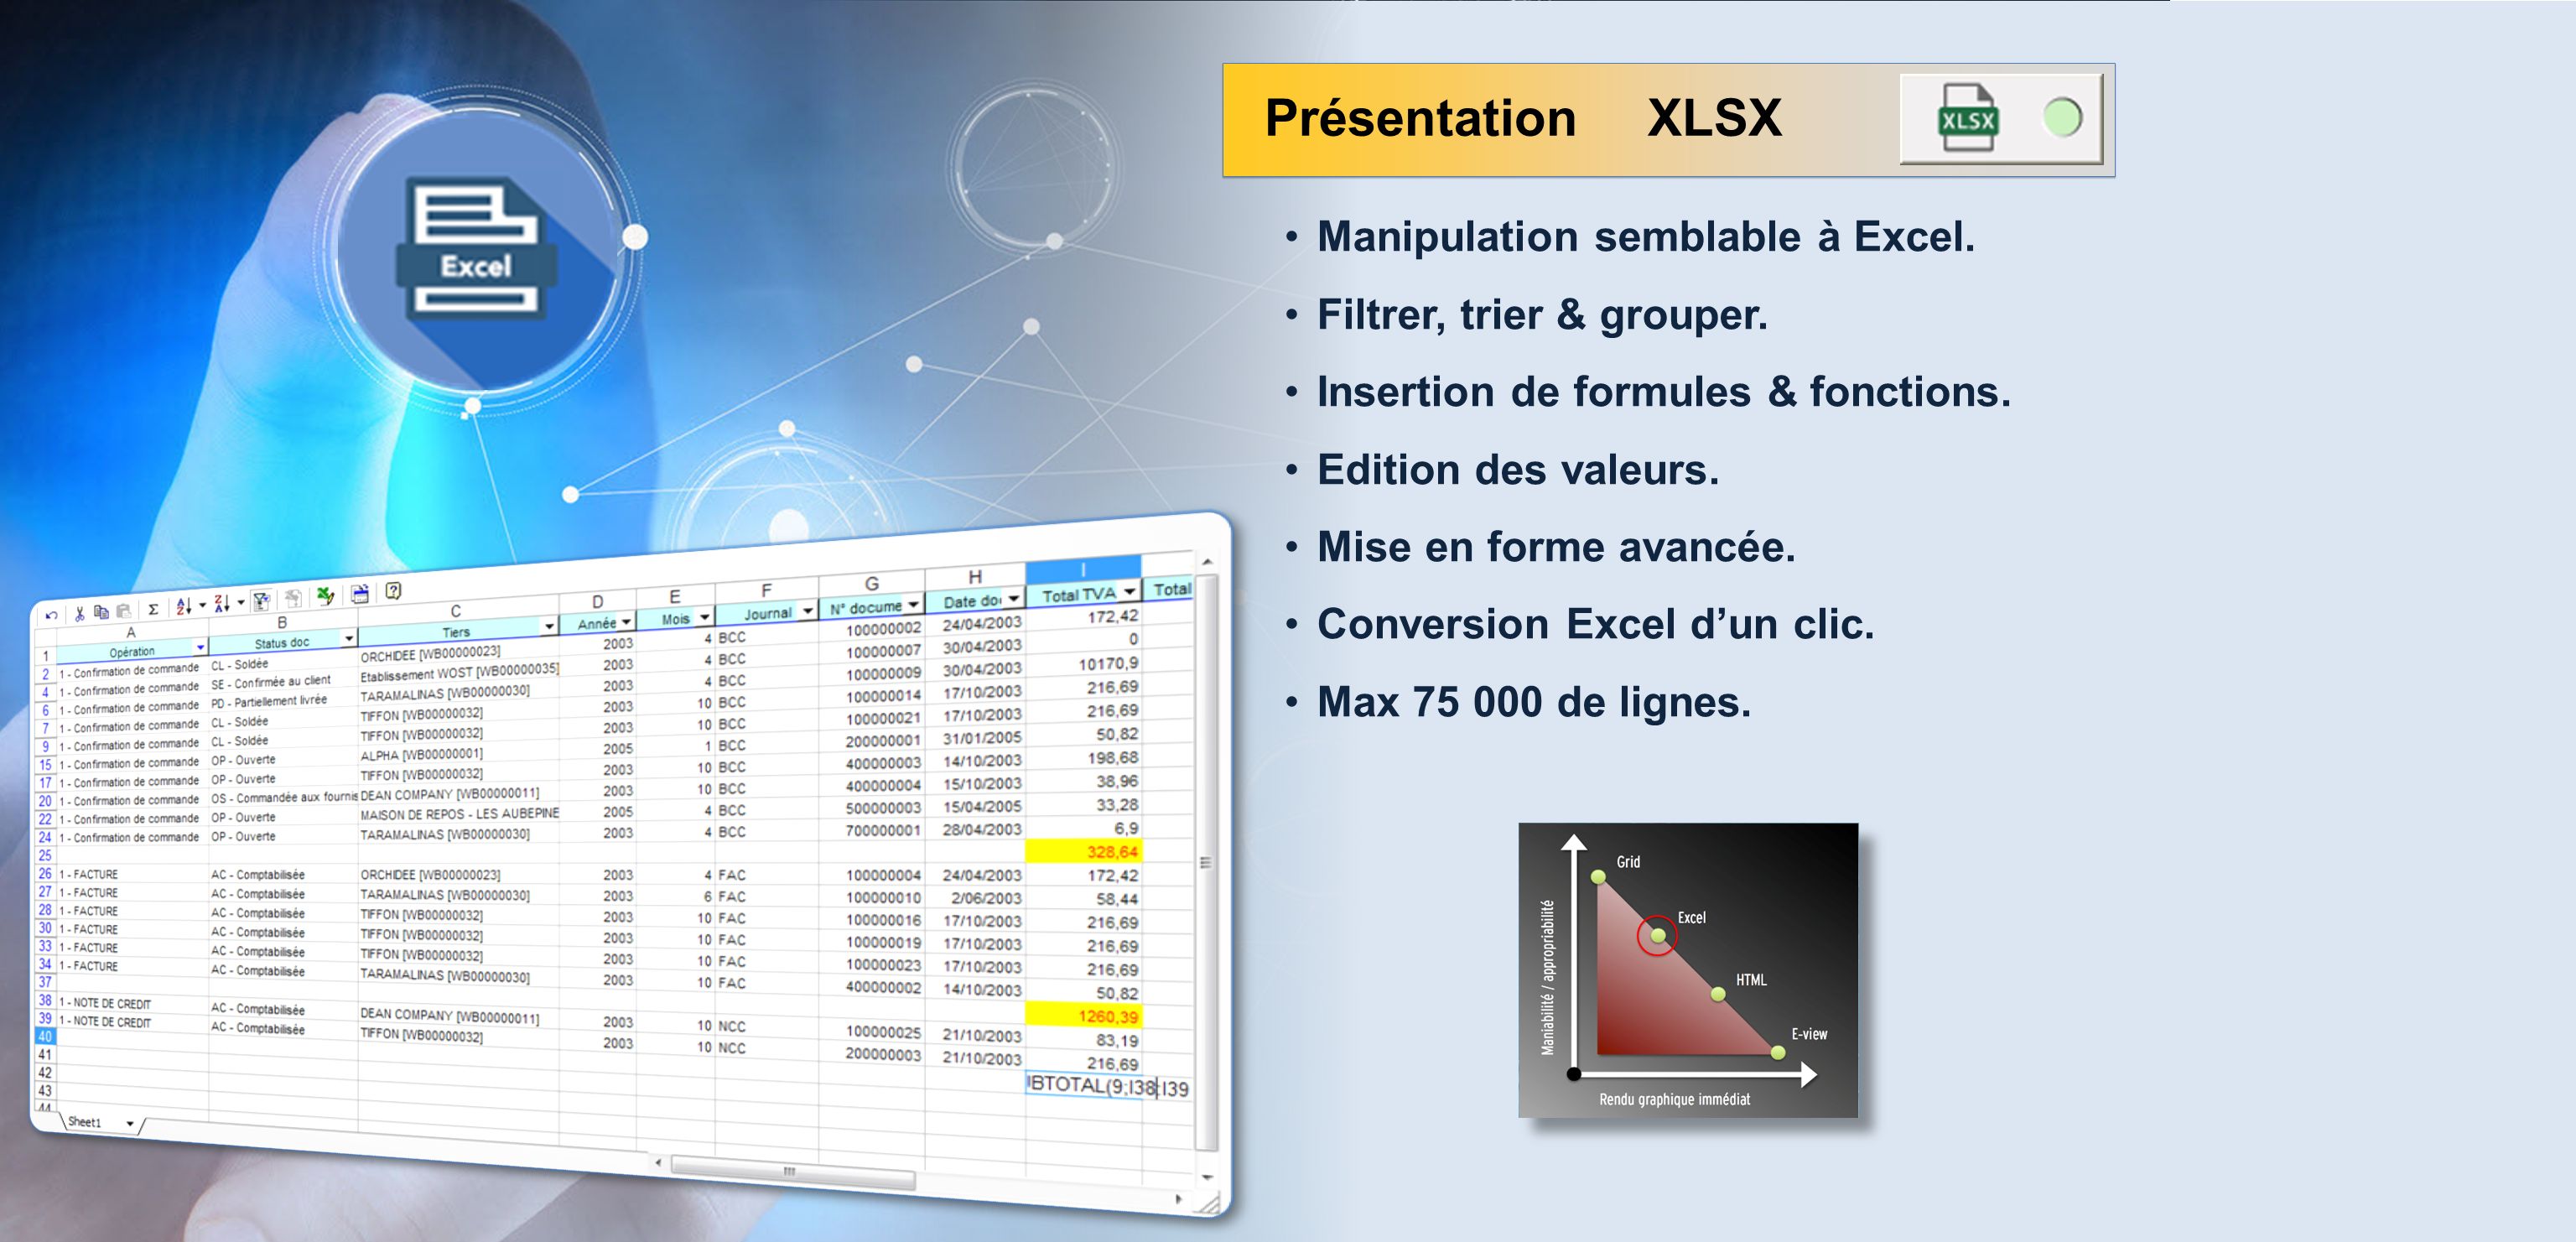 Manipulation semblable à Excel. Filtrer, trier & grouper.